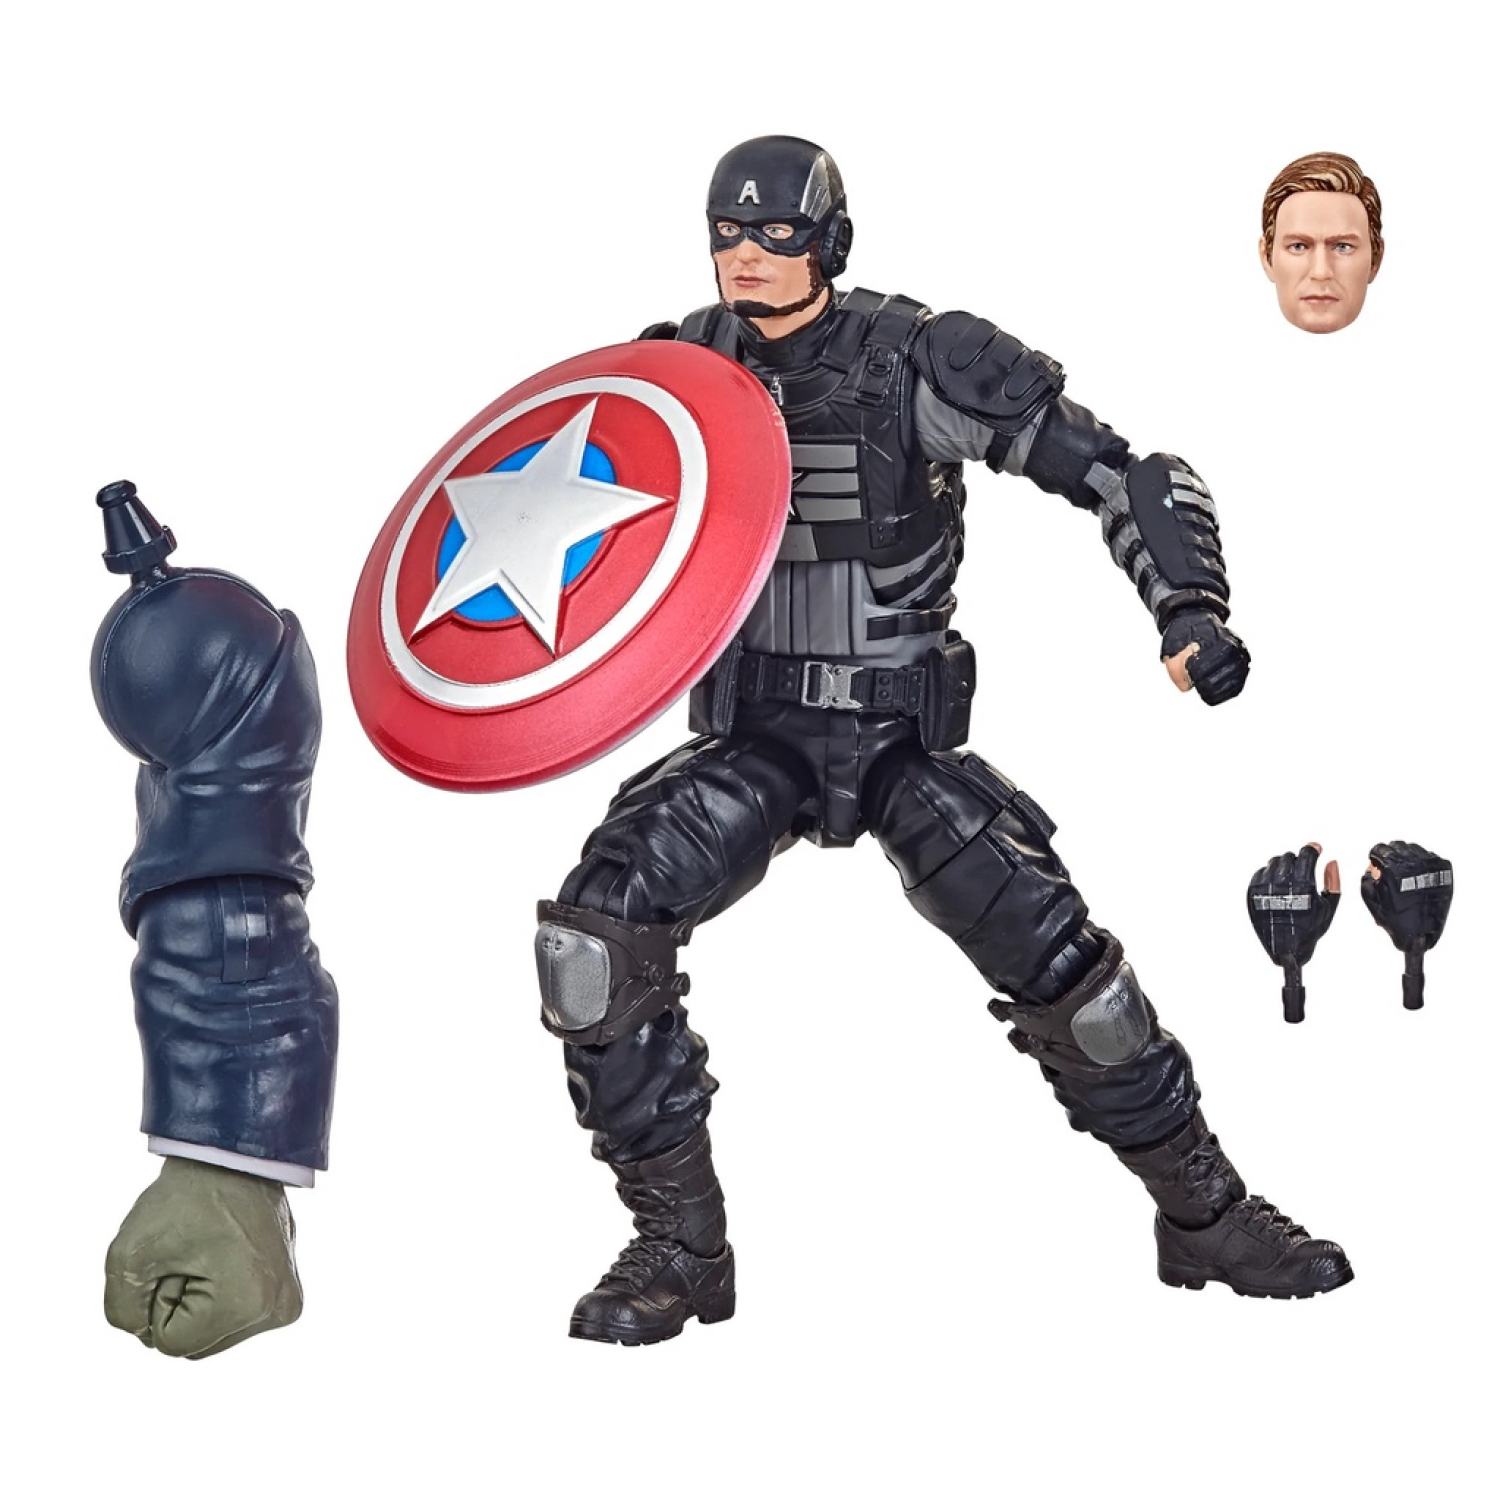 Captain America Đồ Chơi Lắp Ráp Minifigure Nhân Vật Siêu Anh Hùng Marvel  Avengers Đội Trưởng Mỹ KT1031  BrickcoBrick